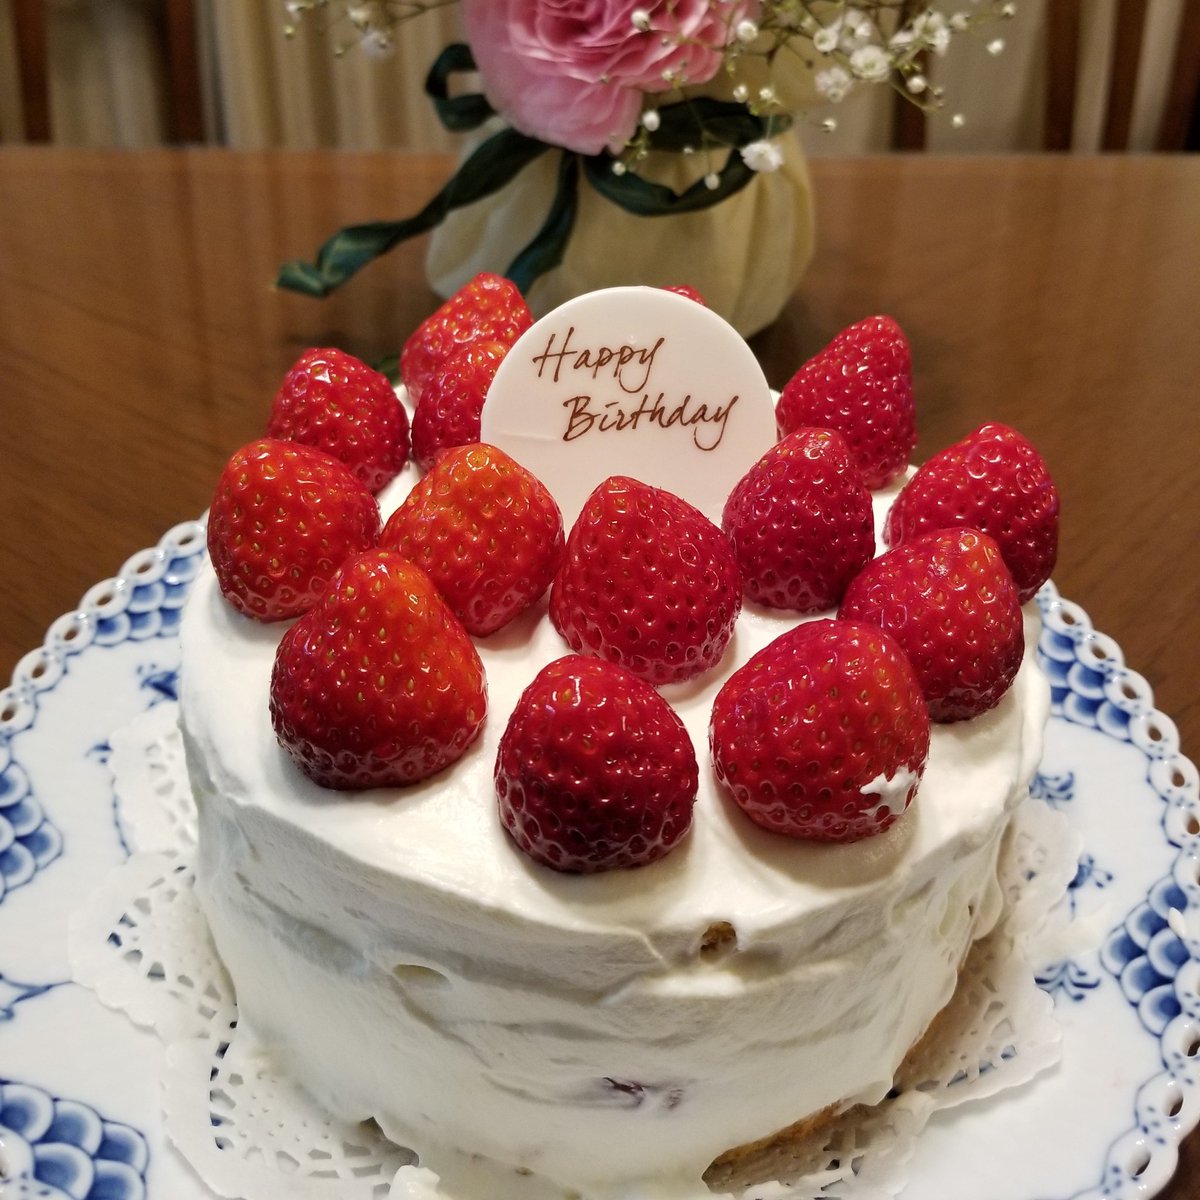 Yuki 駐妻になりたい 誕生日ケーキ 母の手作りです 父の誕生日に毎年作ってくれます クオリティ高過ぎ 美味しい ショートケーキ 誕生日おめでとう